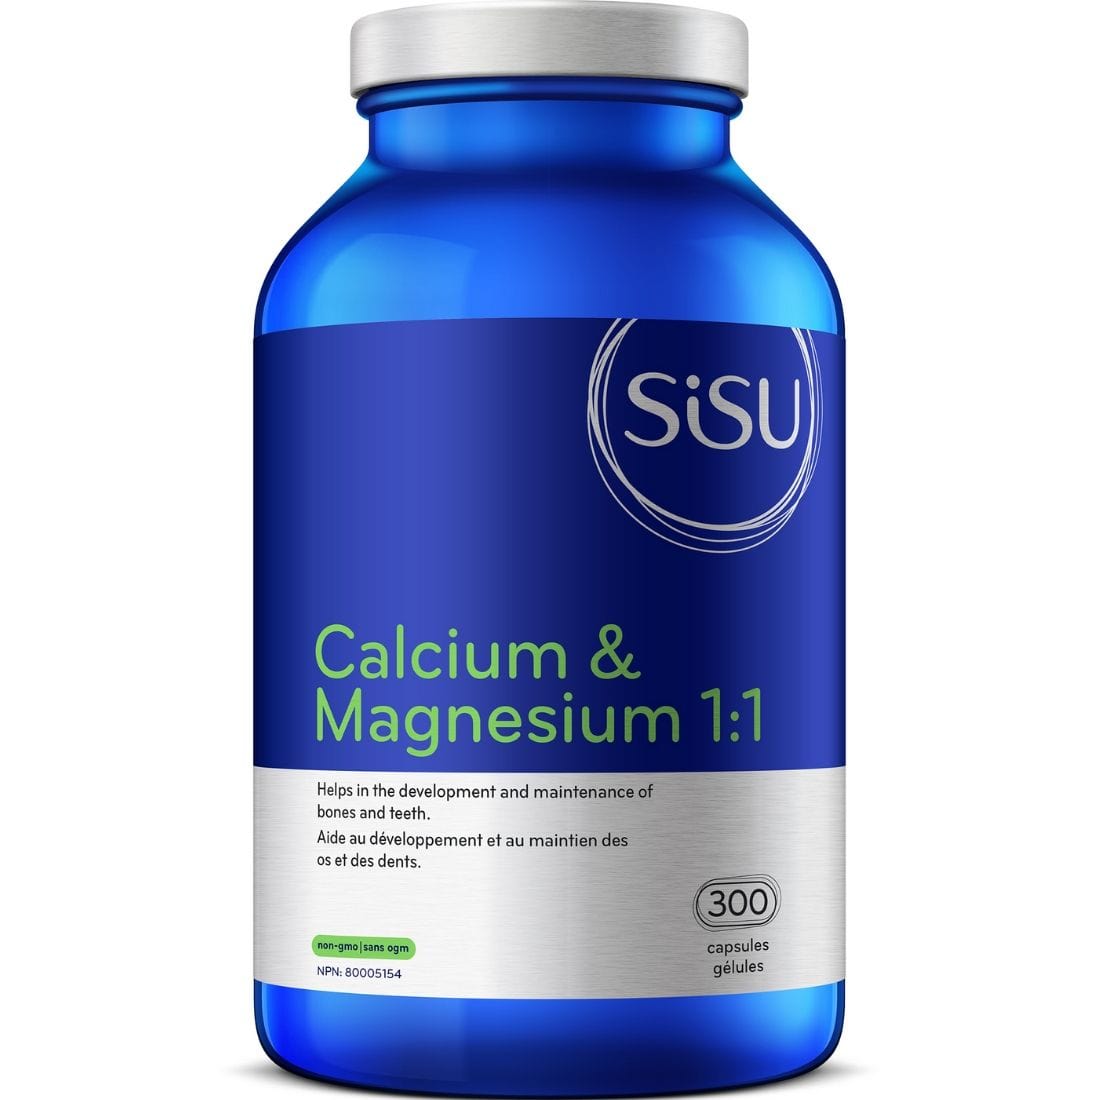 SISU Calcium & Magnesium 1:1 with Vitamin D